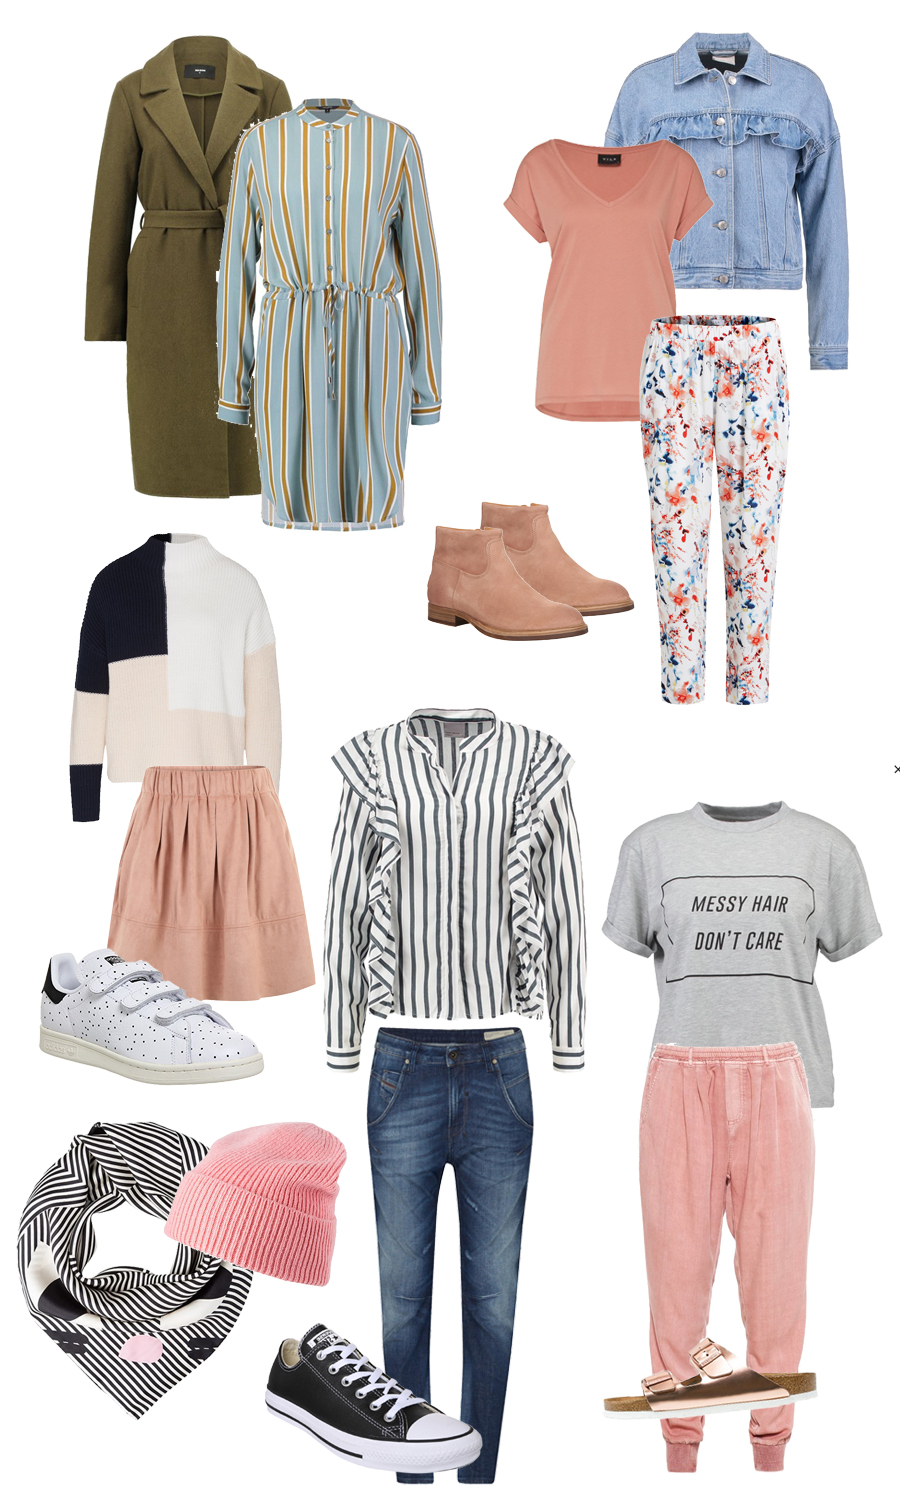 Shop My Style - Frühlingsoutfits im PinkepankStyle